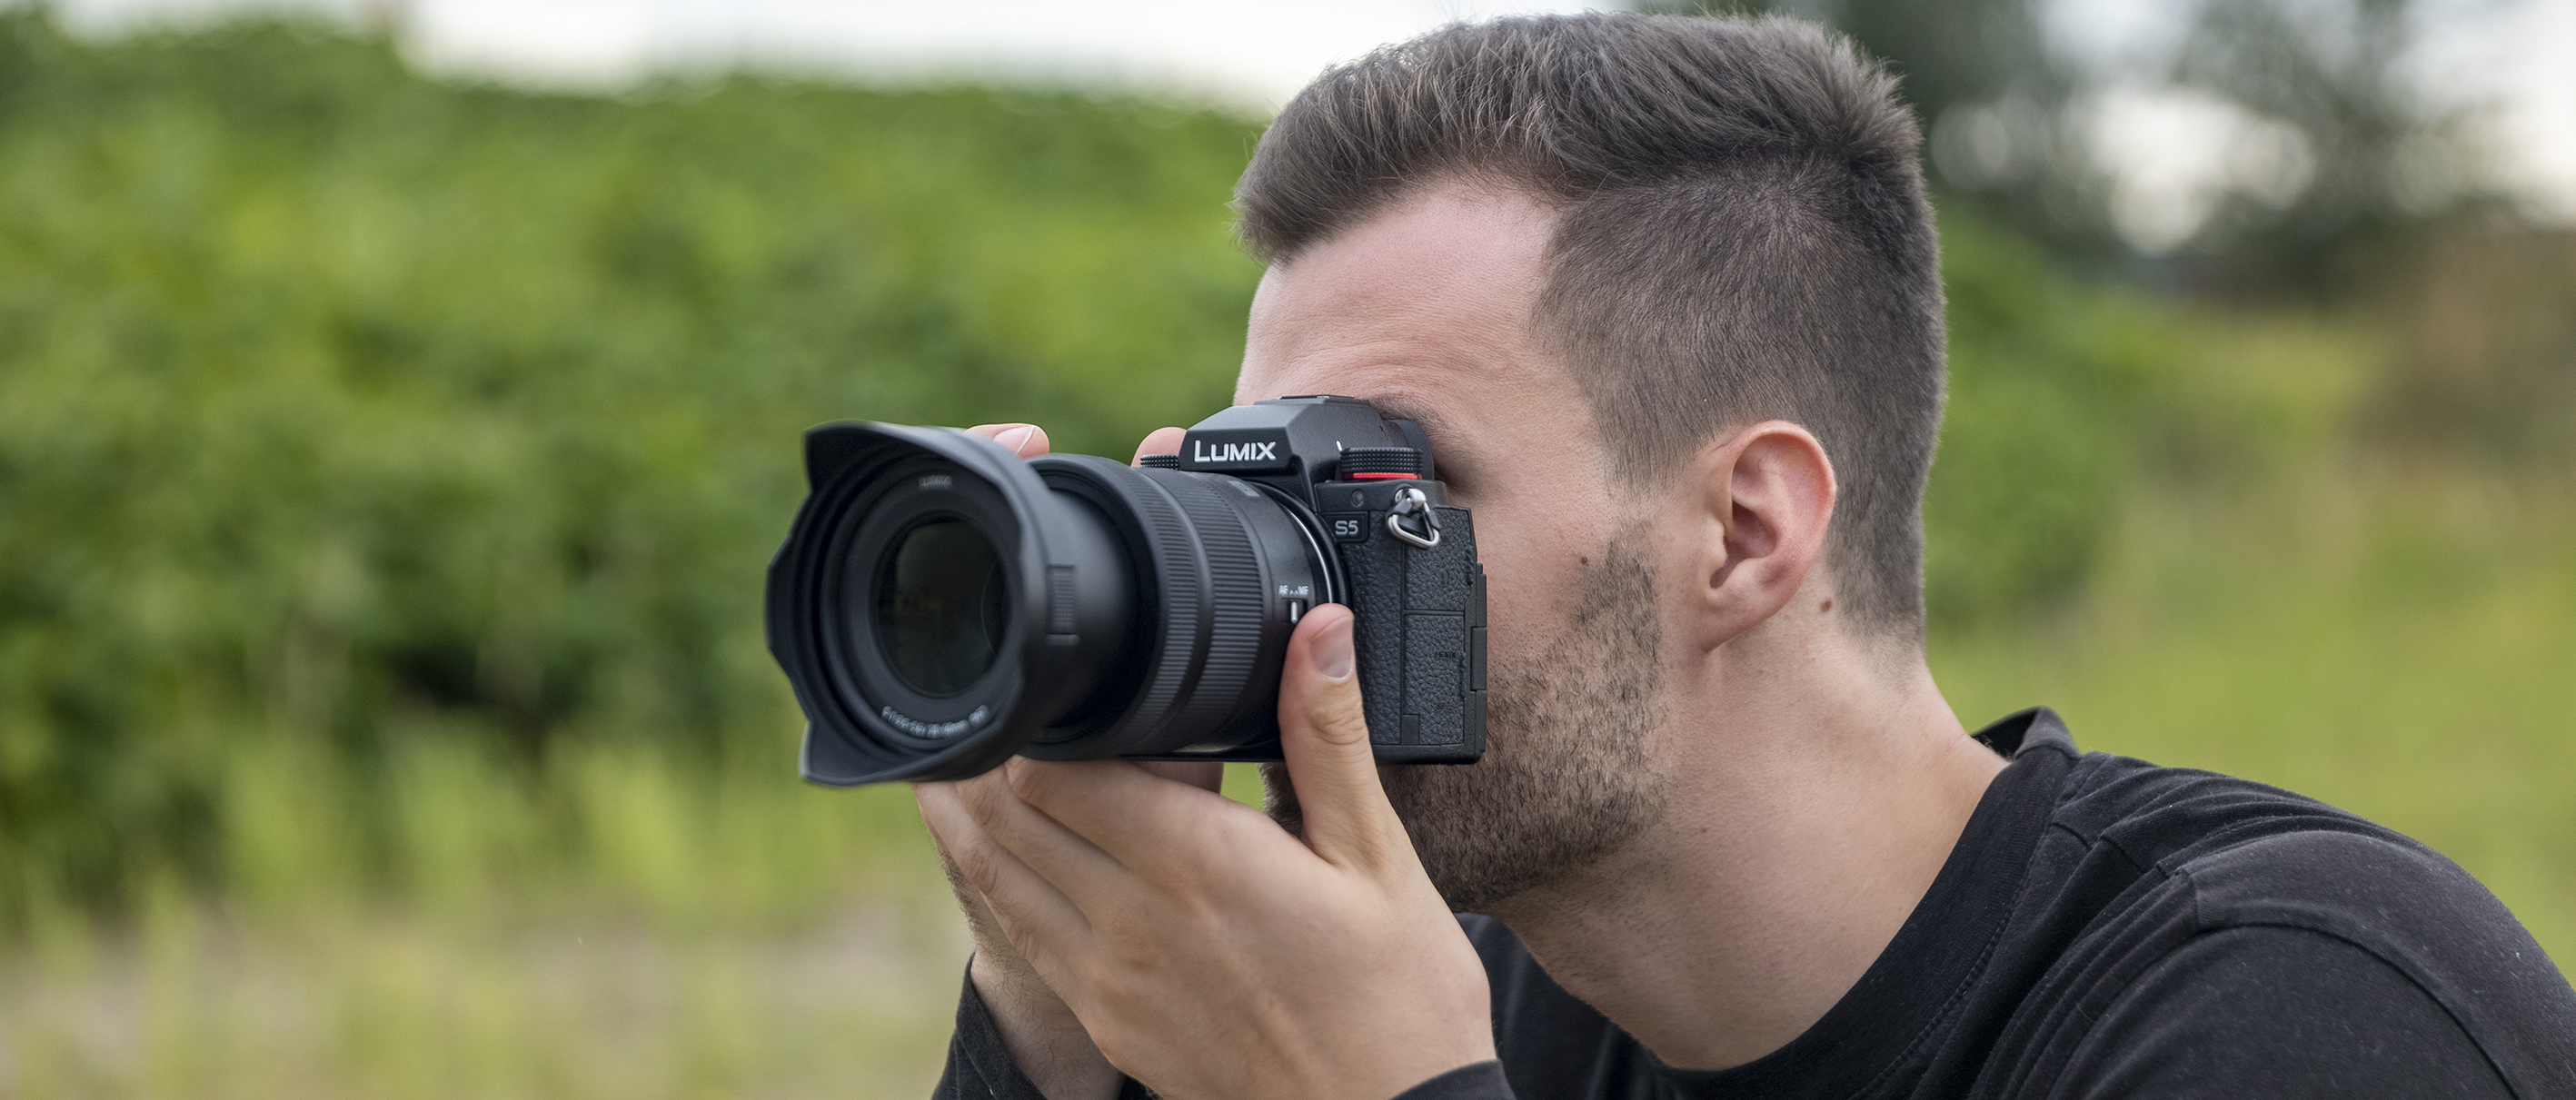 Preview Image: Fotograf und Filmemacher Chris Kueper unterwegs mit der neuen Panasonic Lumix S5